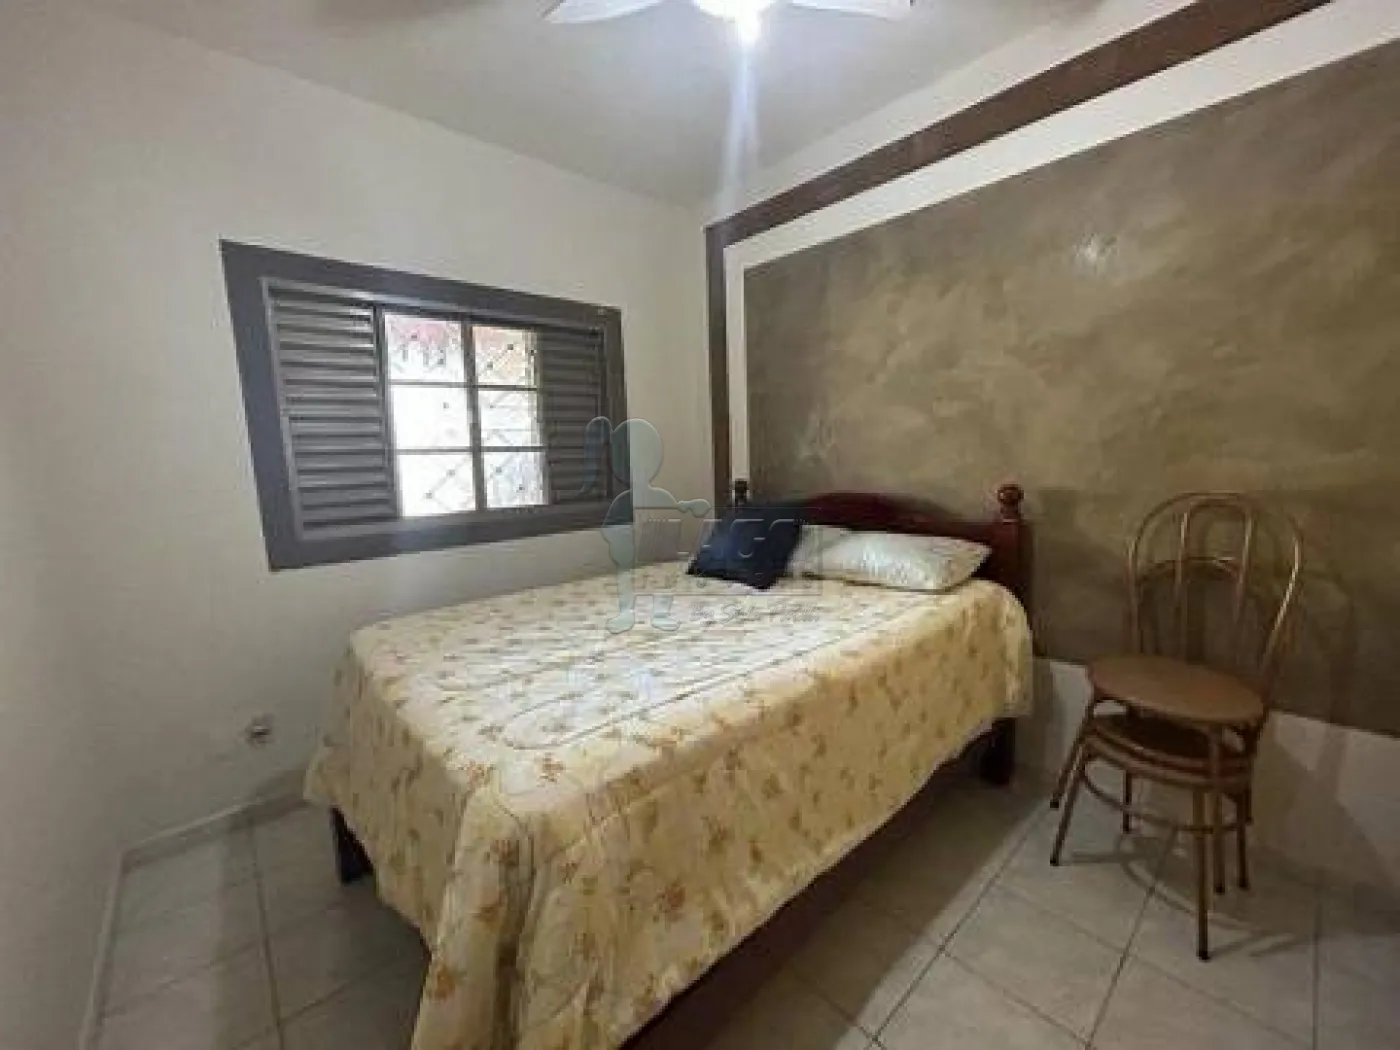 Comprar Casa / Padrão em Ribeirão Preto R$ 330.000,00 - Foto 2